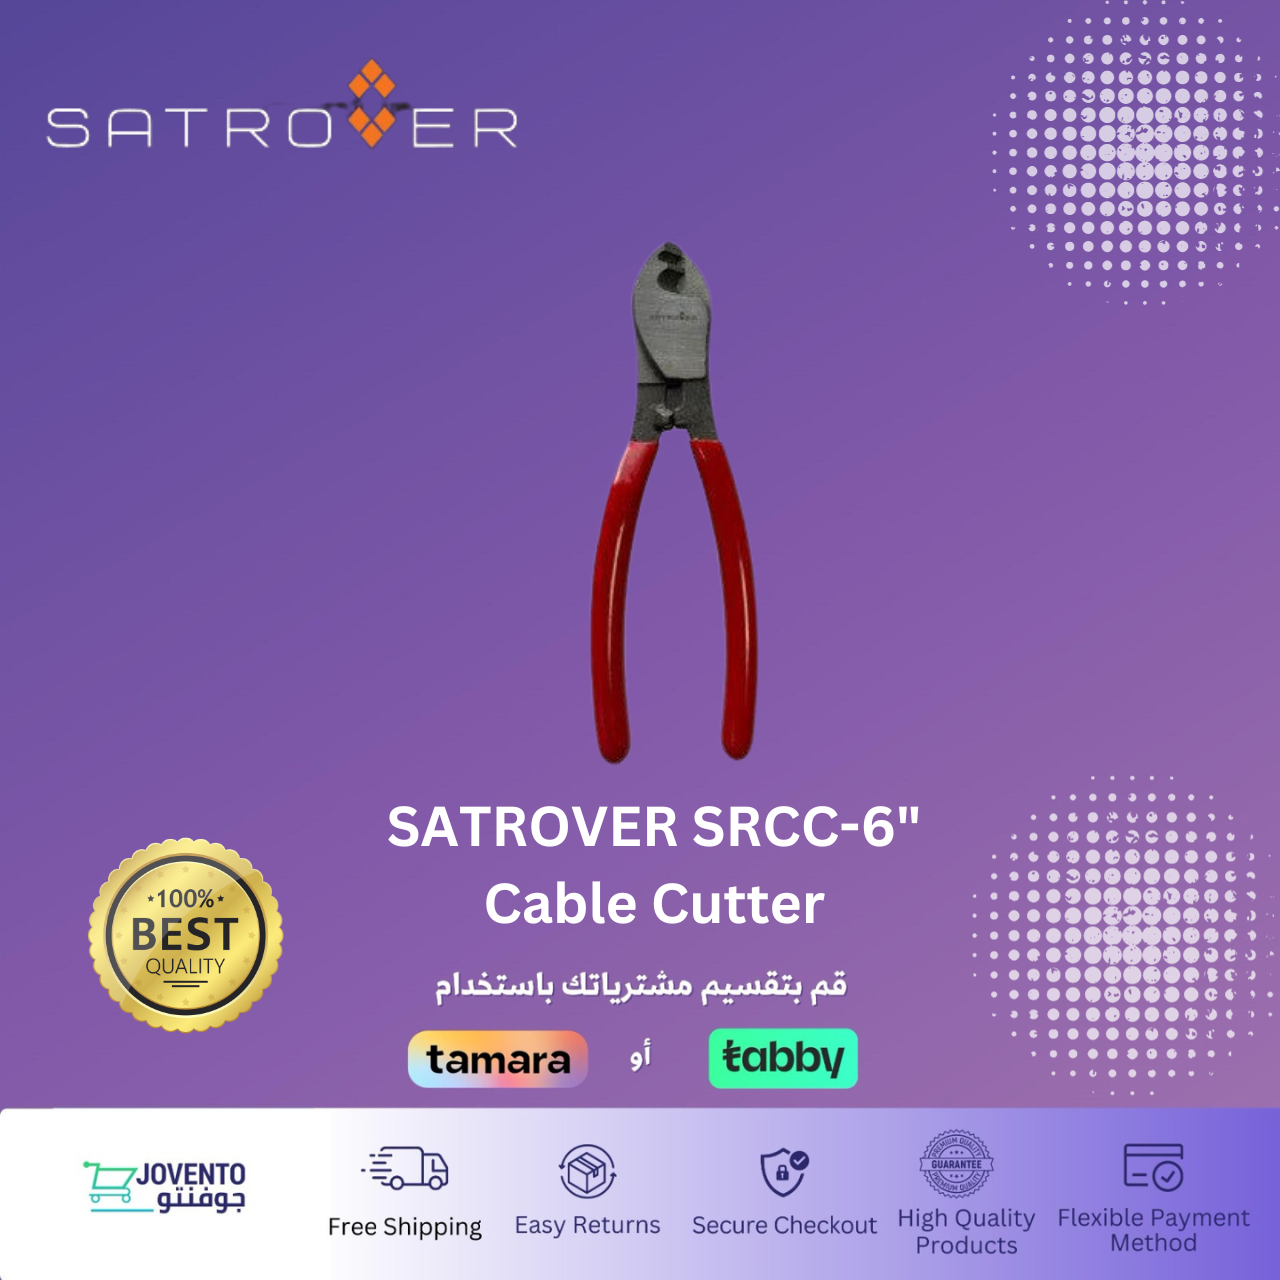 SATROVER SRCC-6" Cable Cutter